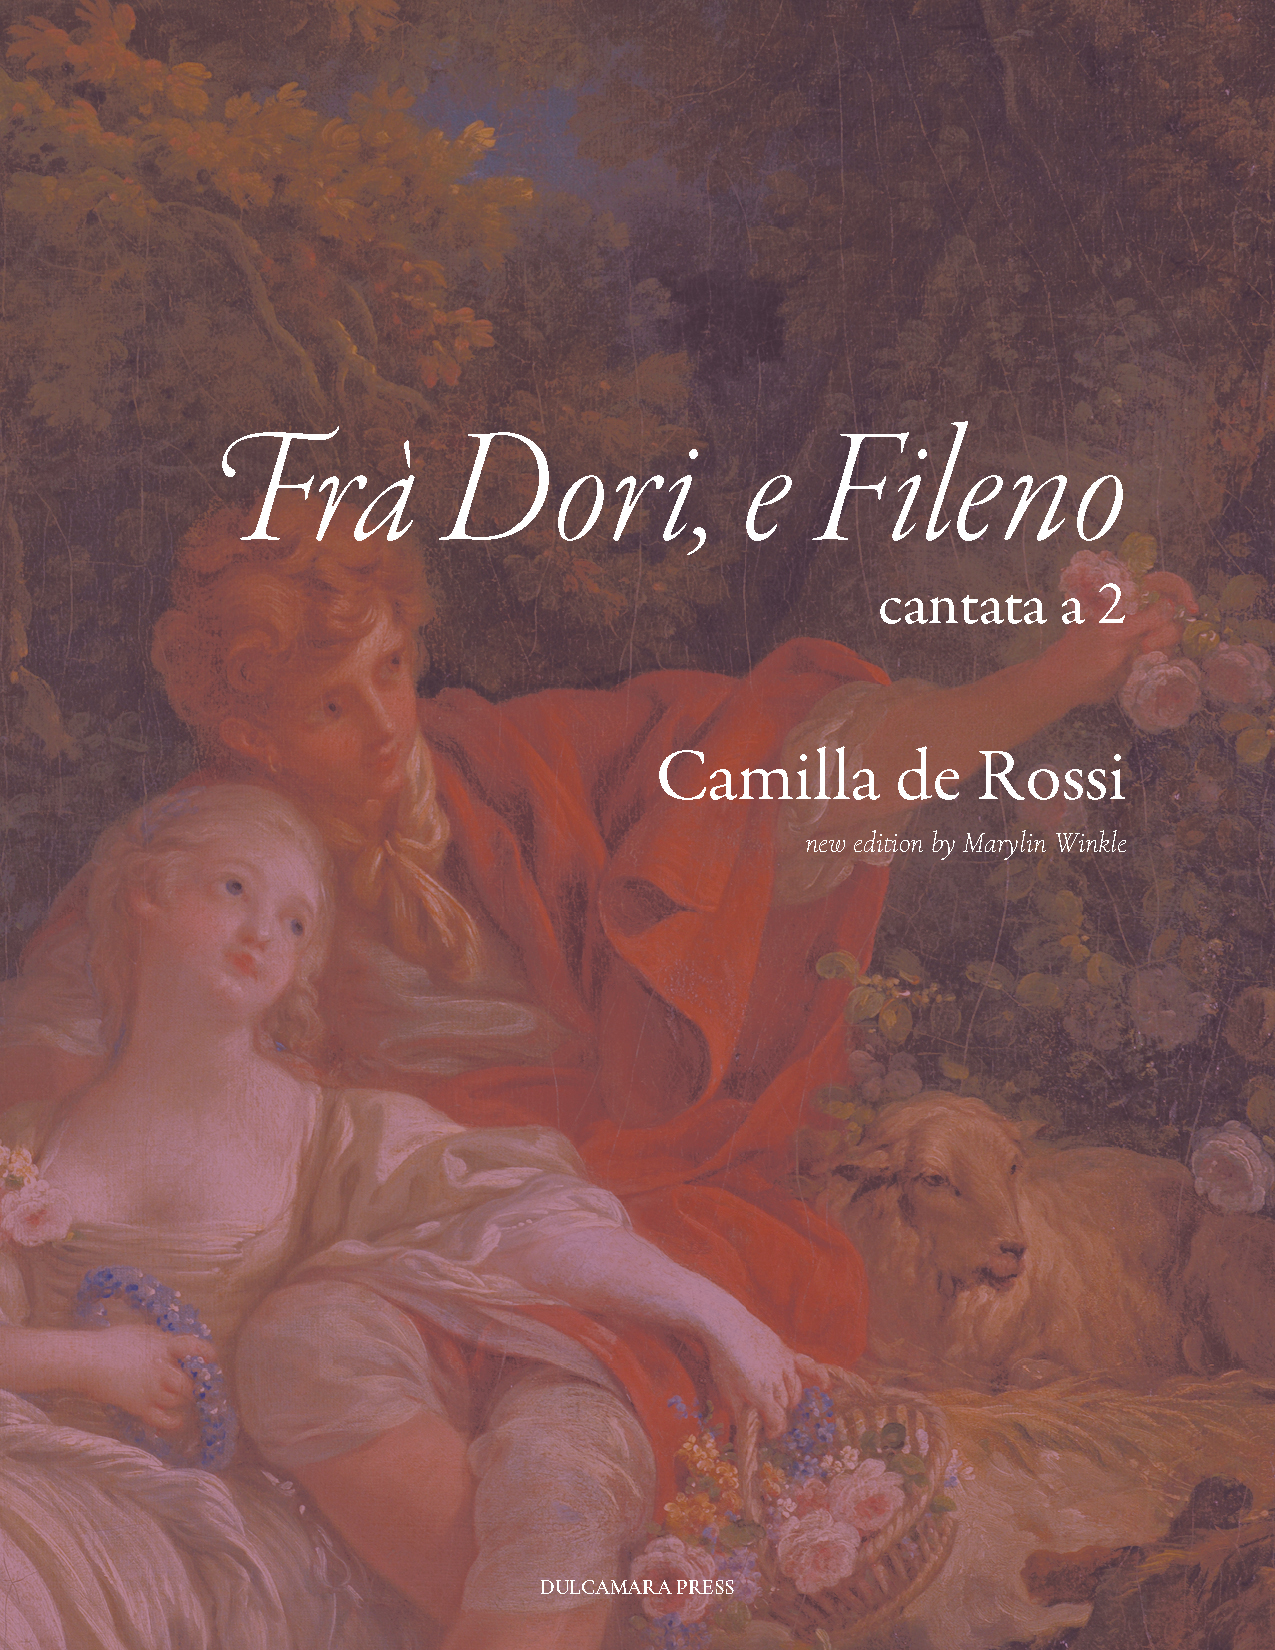 cover image for Fra Dori e Fileno, cantata a due by Camilla de Rossi.